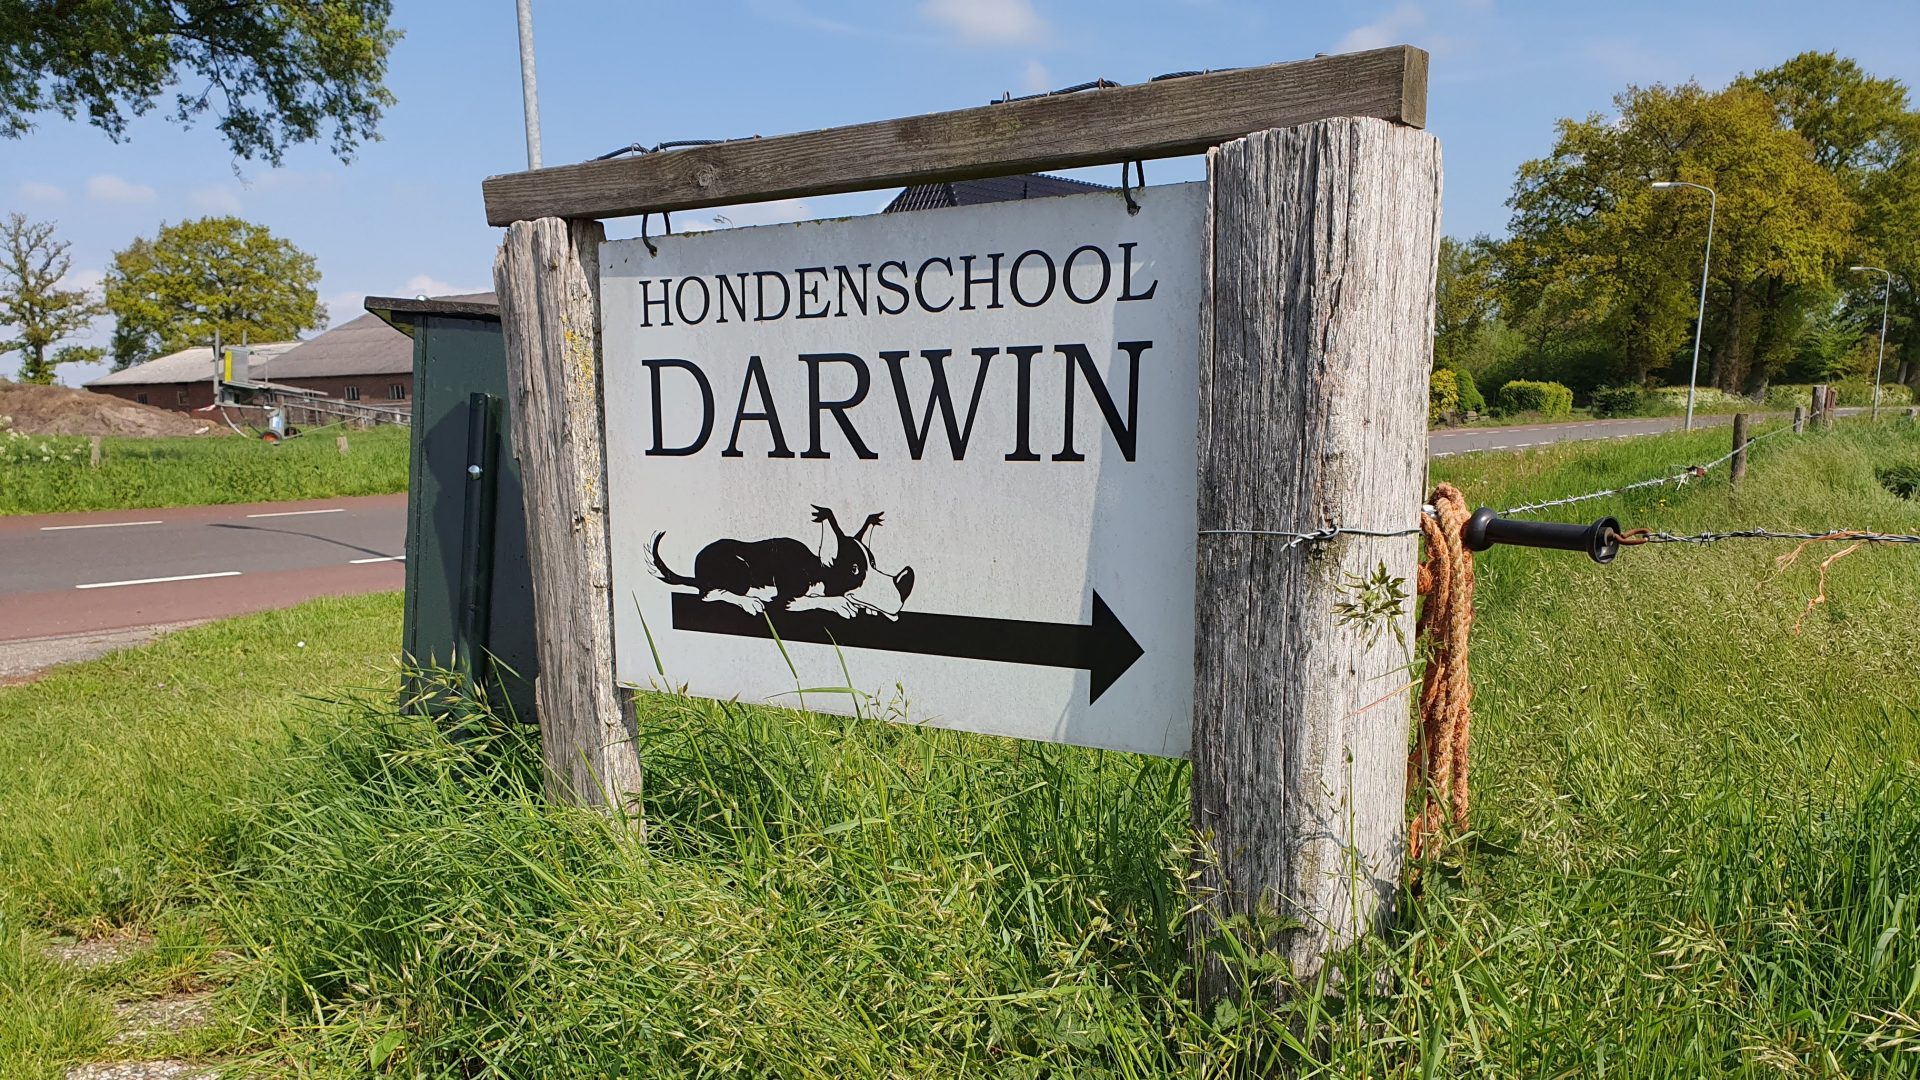 Hondenschool Darwin